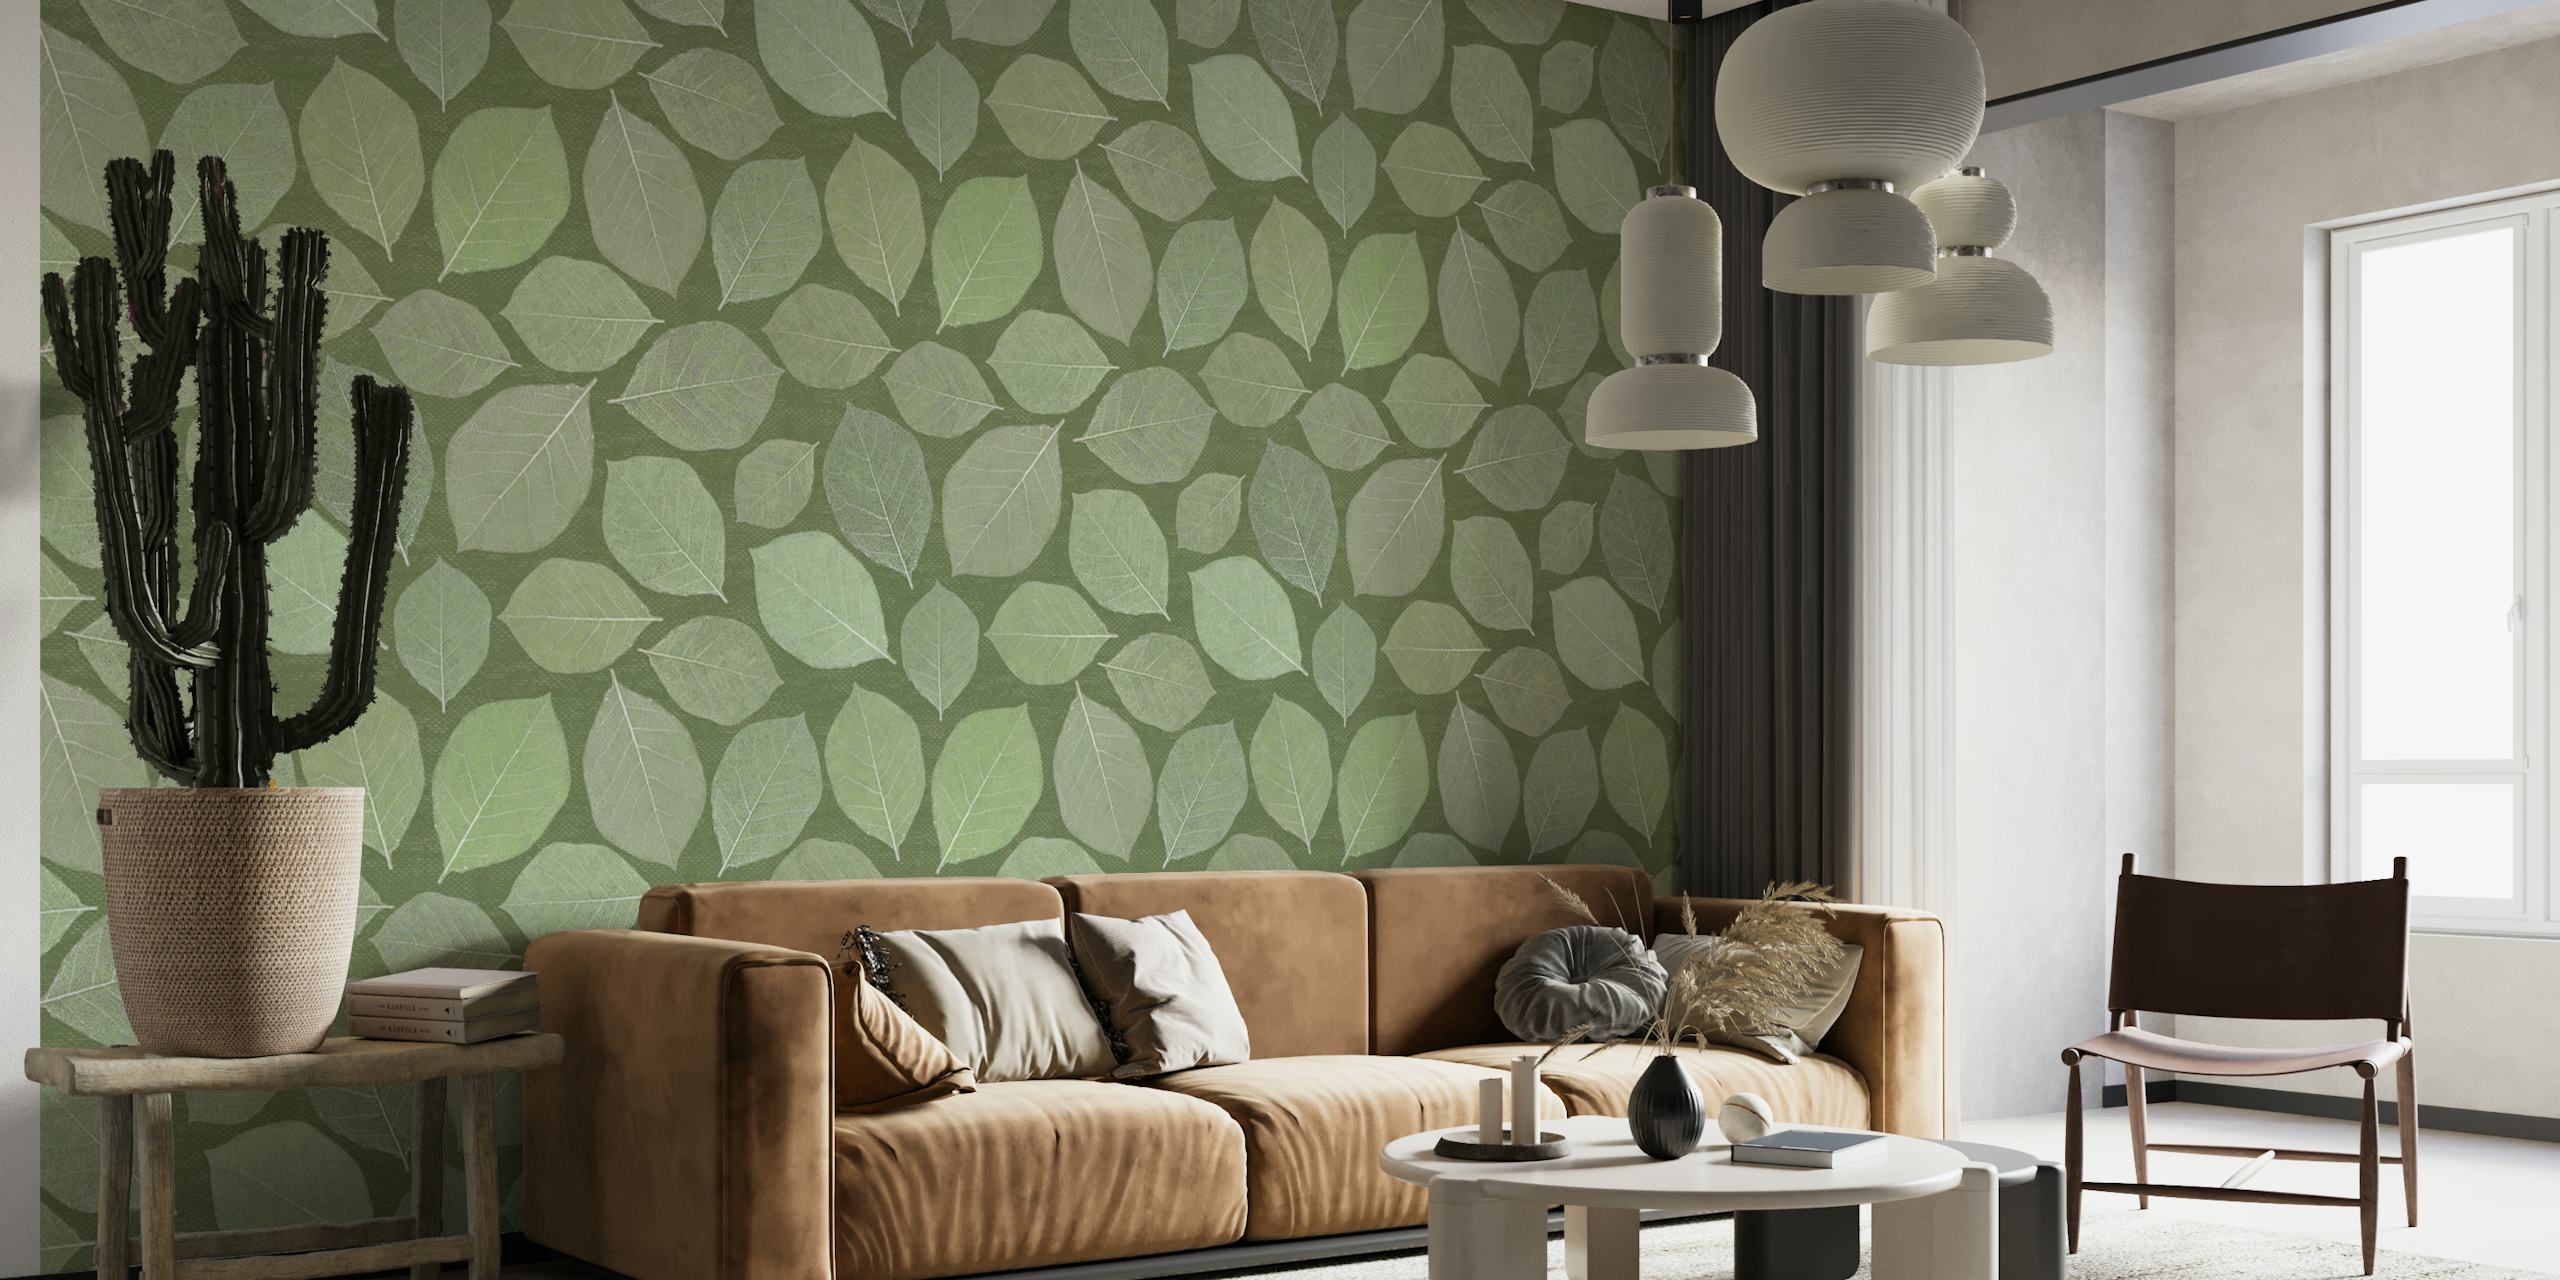 Fotomural de hojas de magnolia en diferentes tonalidades de verde perfecto para una decoración interior tranquila